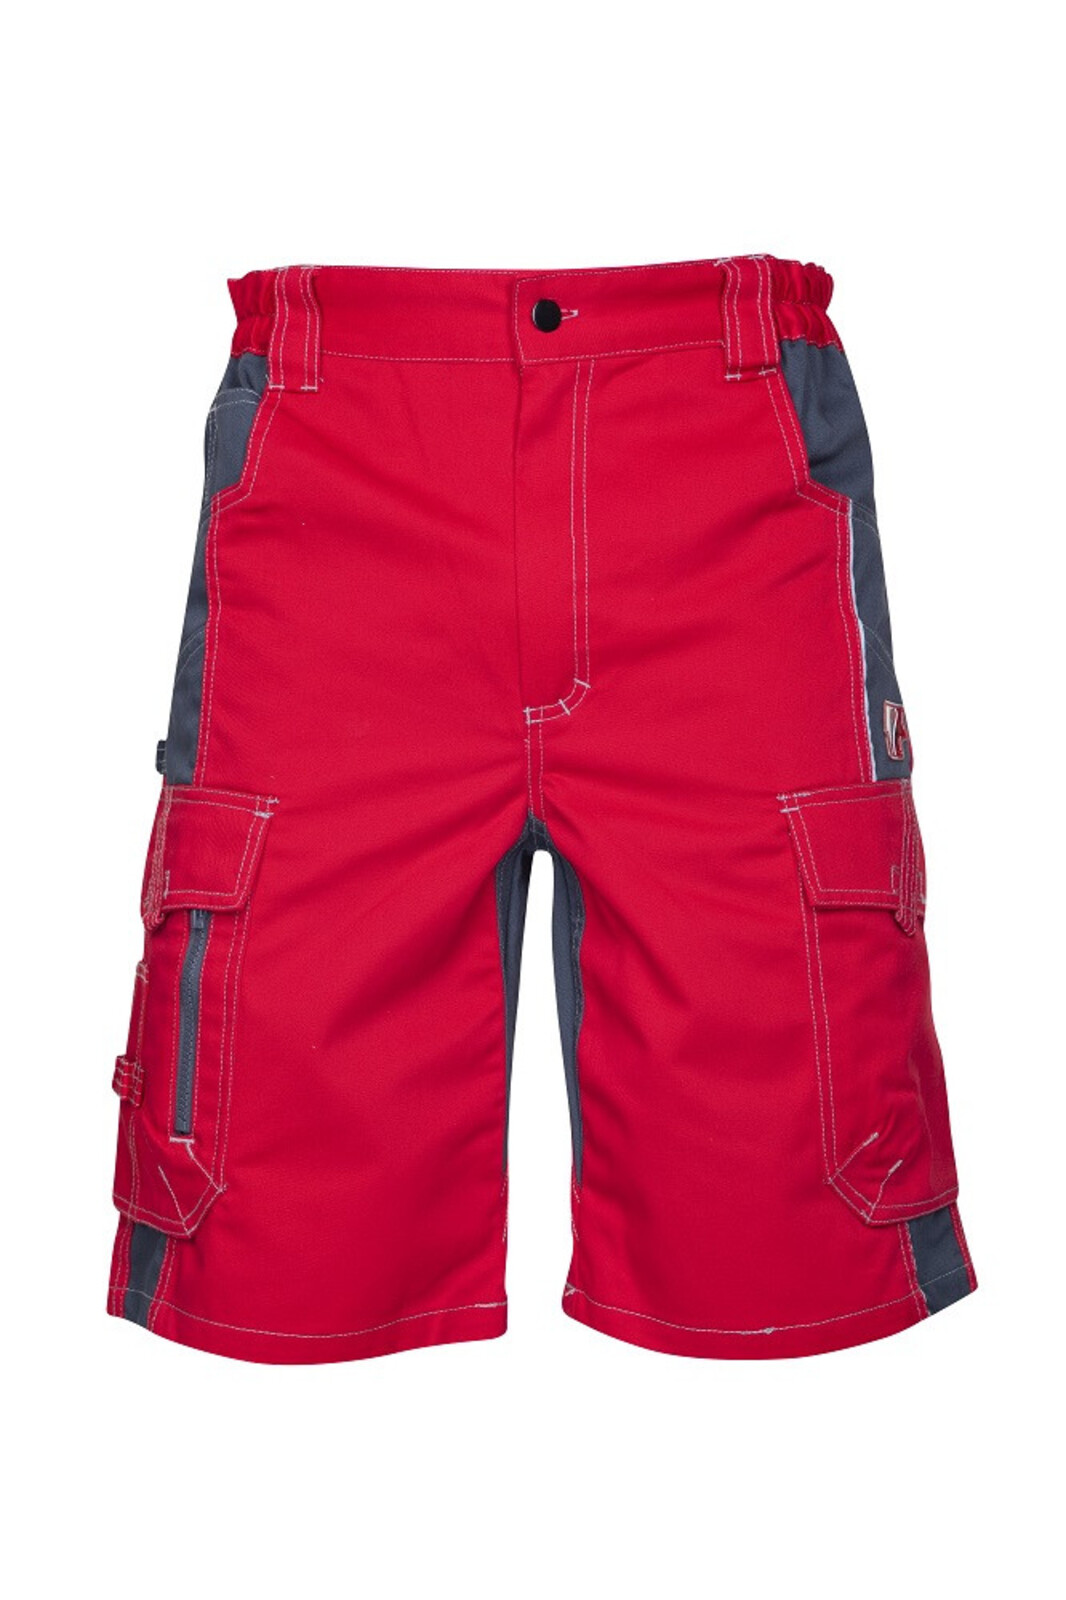 Pánske montérkové šortky Ardon Vision - veľkosť: 60, farba: červená/sivá